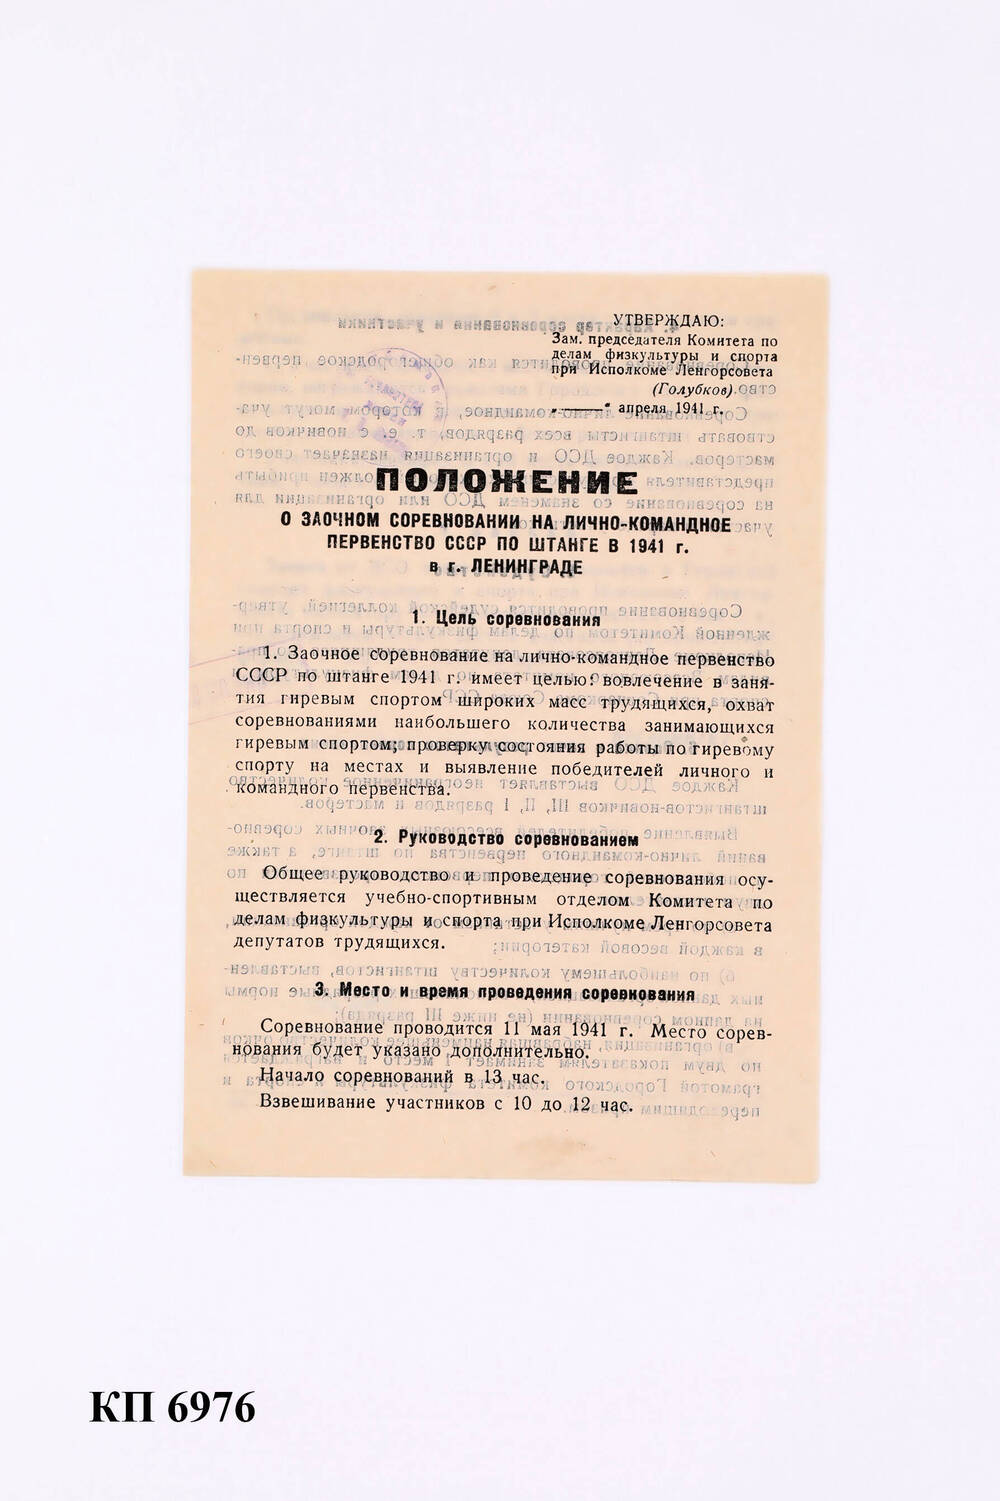 Положение о заочном соревновании на лично-командное первенство СССР по штанге в 1941 г. в г. Ленинграде